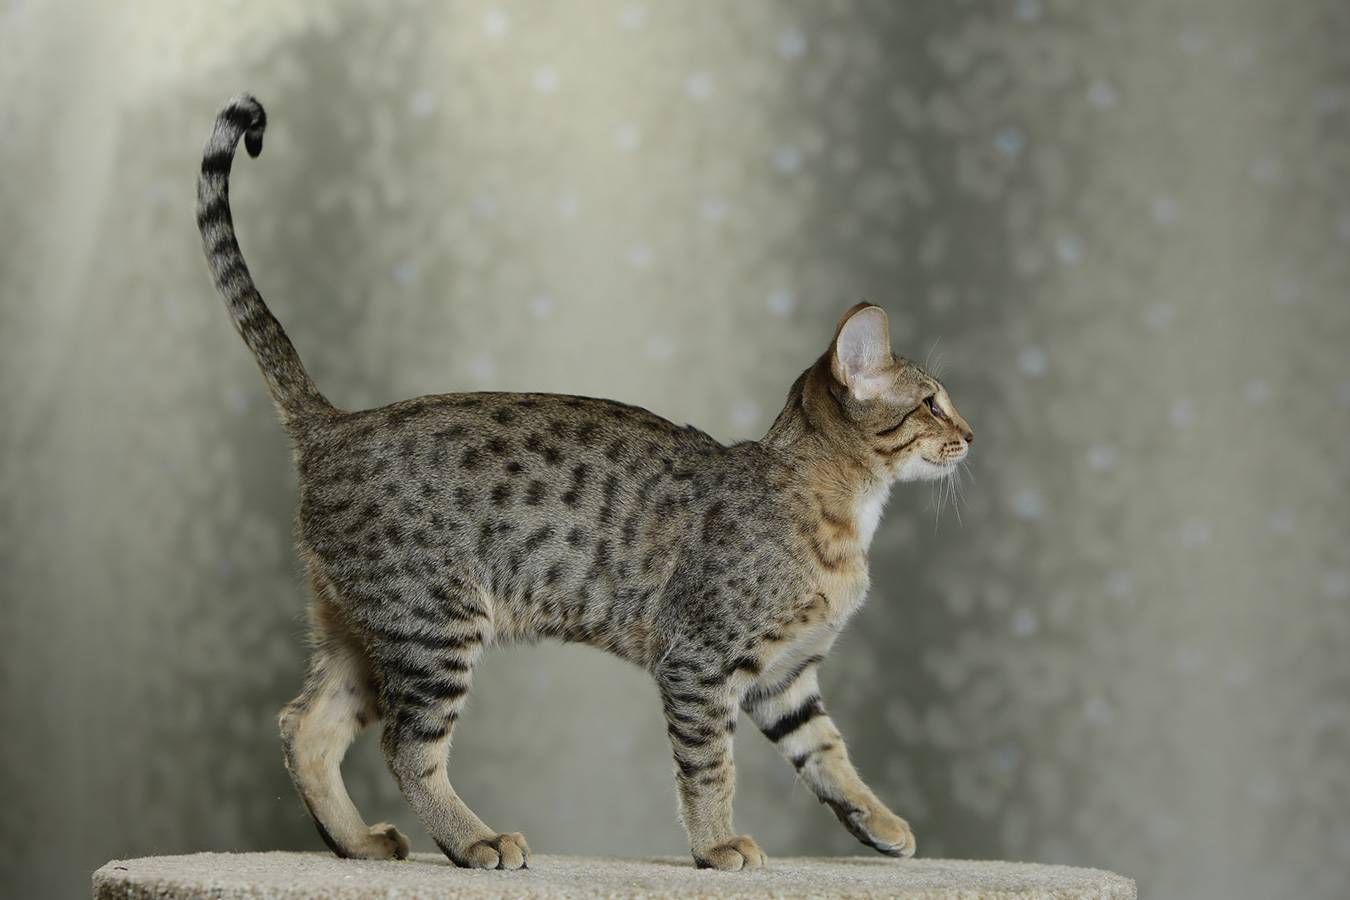 Саванна - 100 фото, характер и общие характеристики кошки особой породы